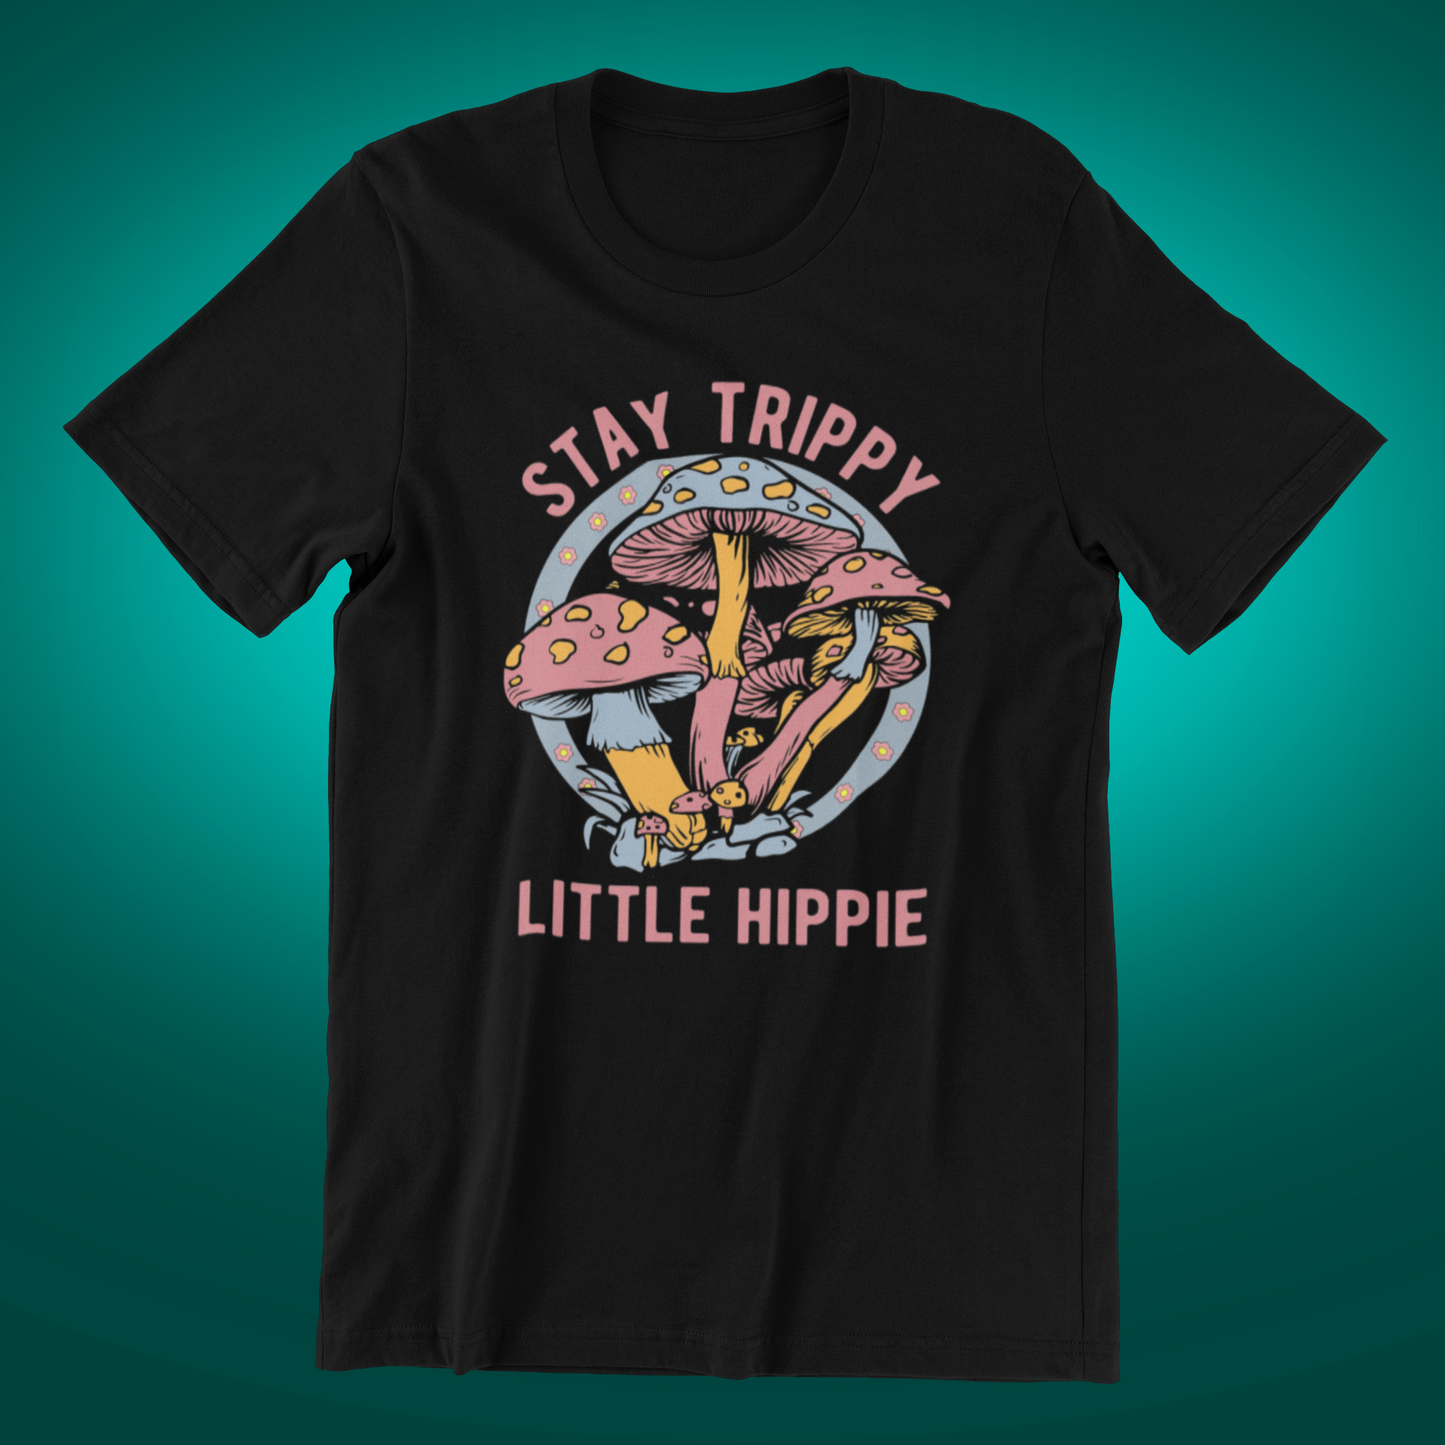 Stay Trippy Little Hippy